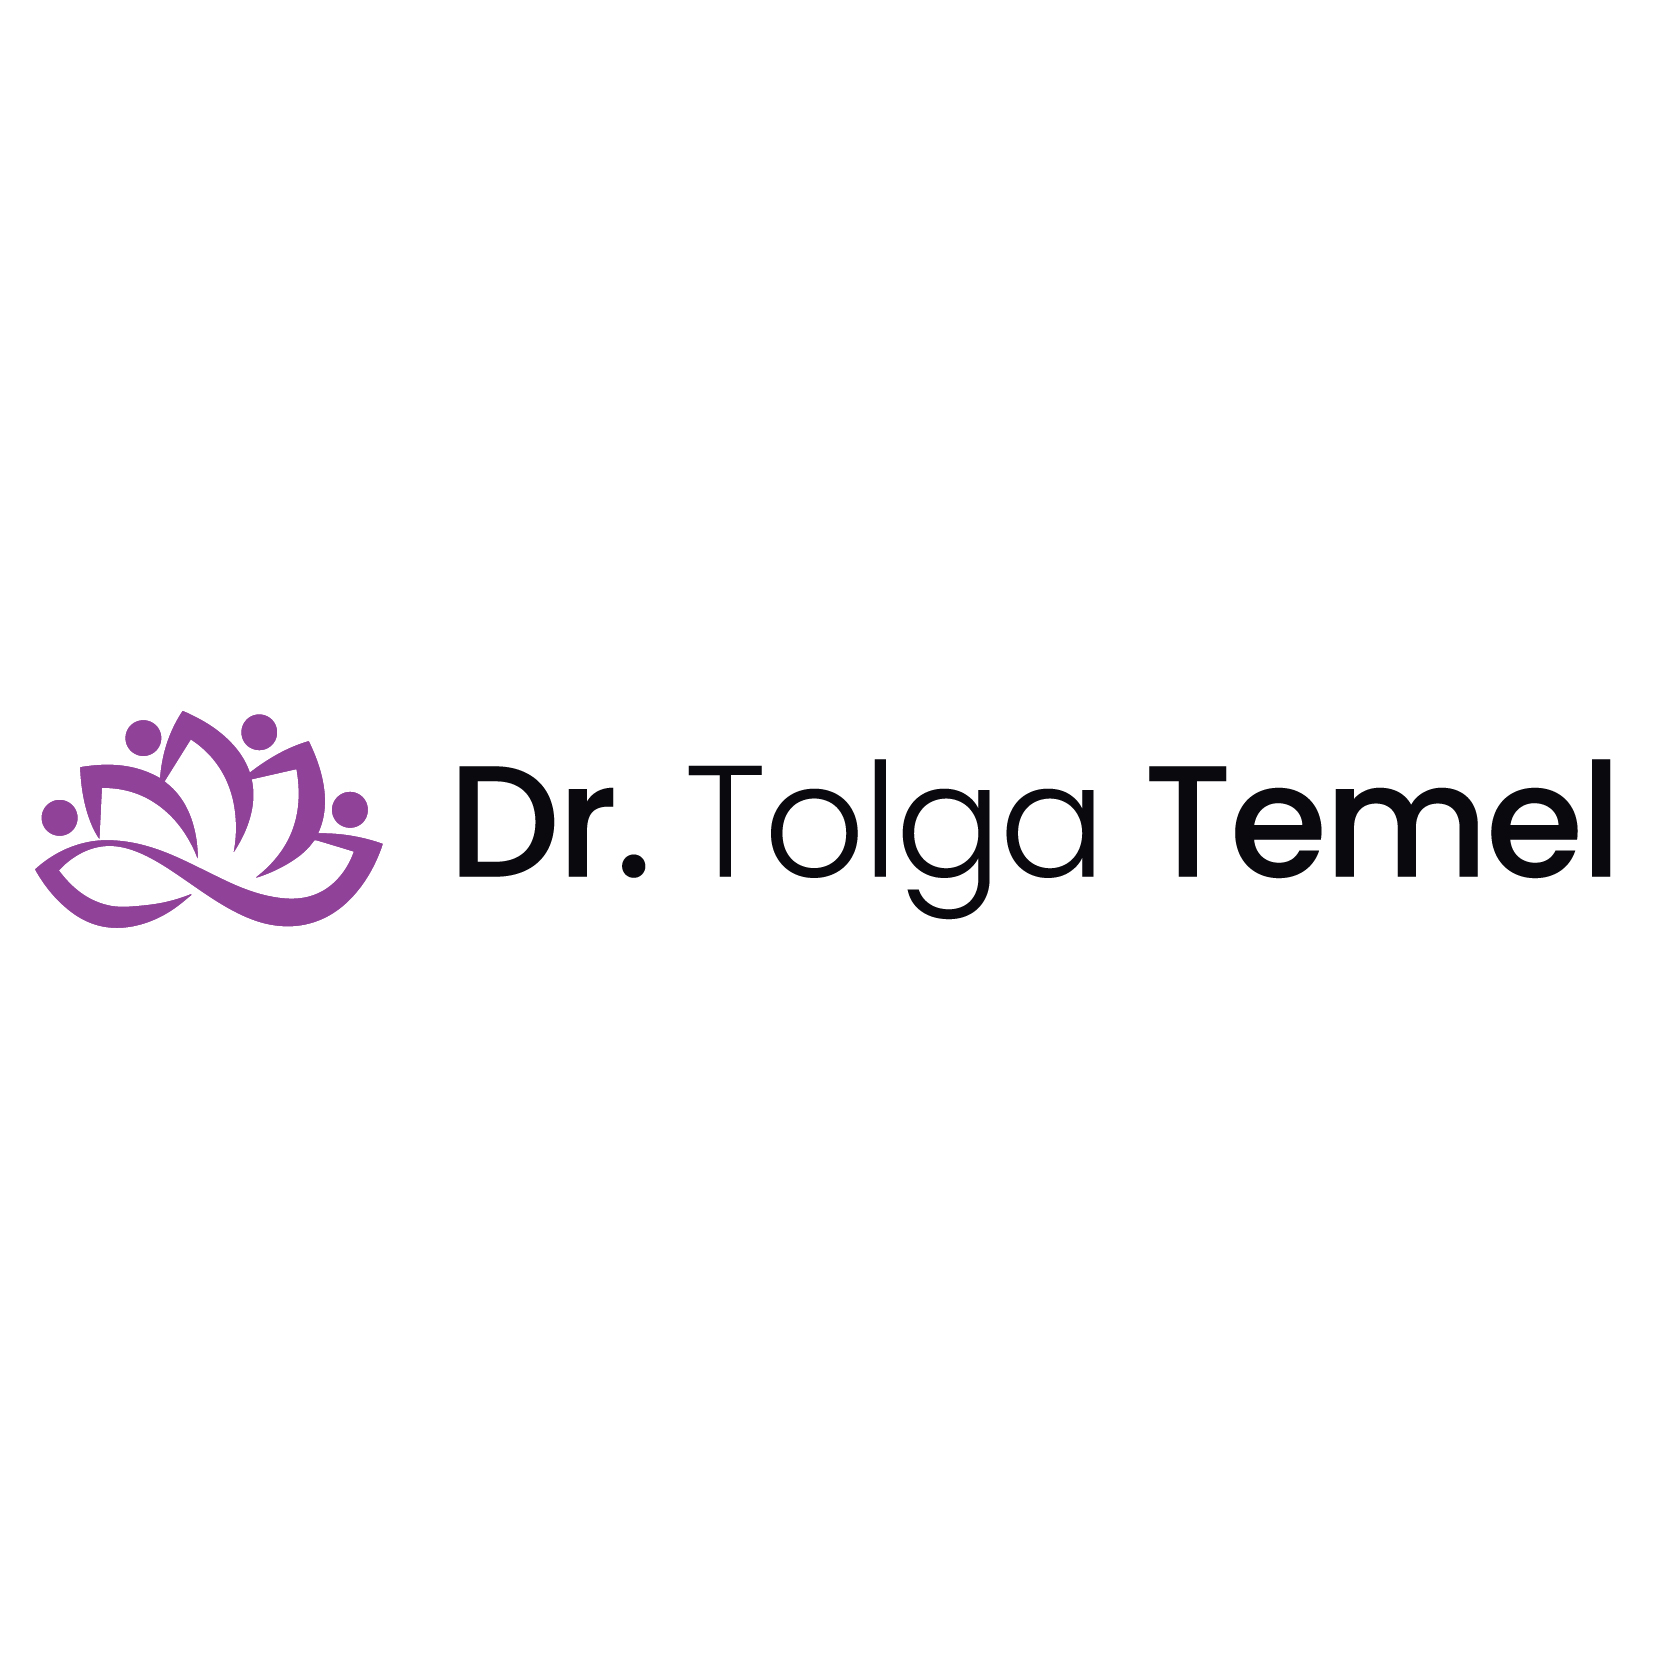 Dr. Tolga Temel